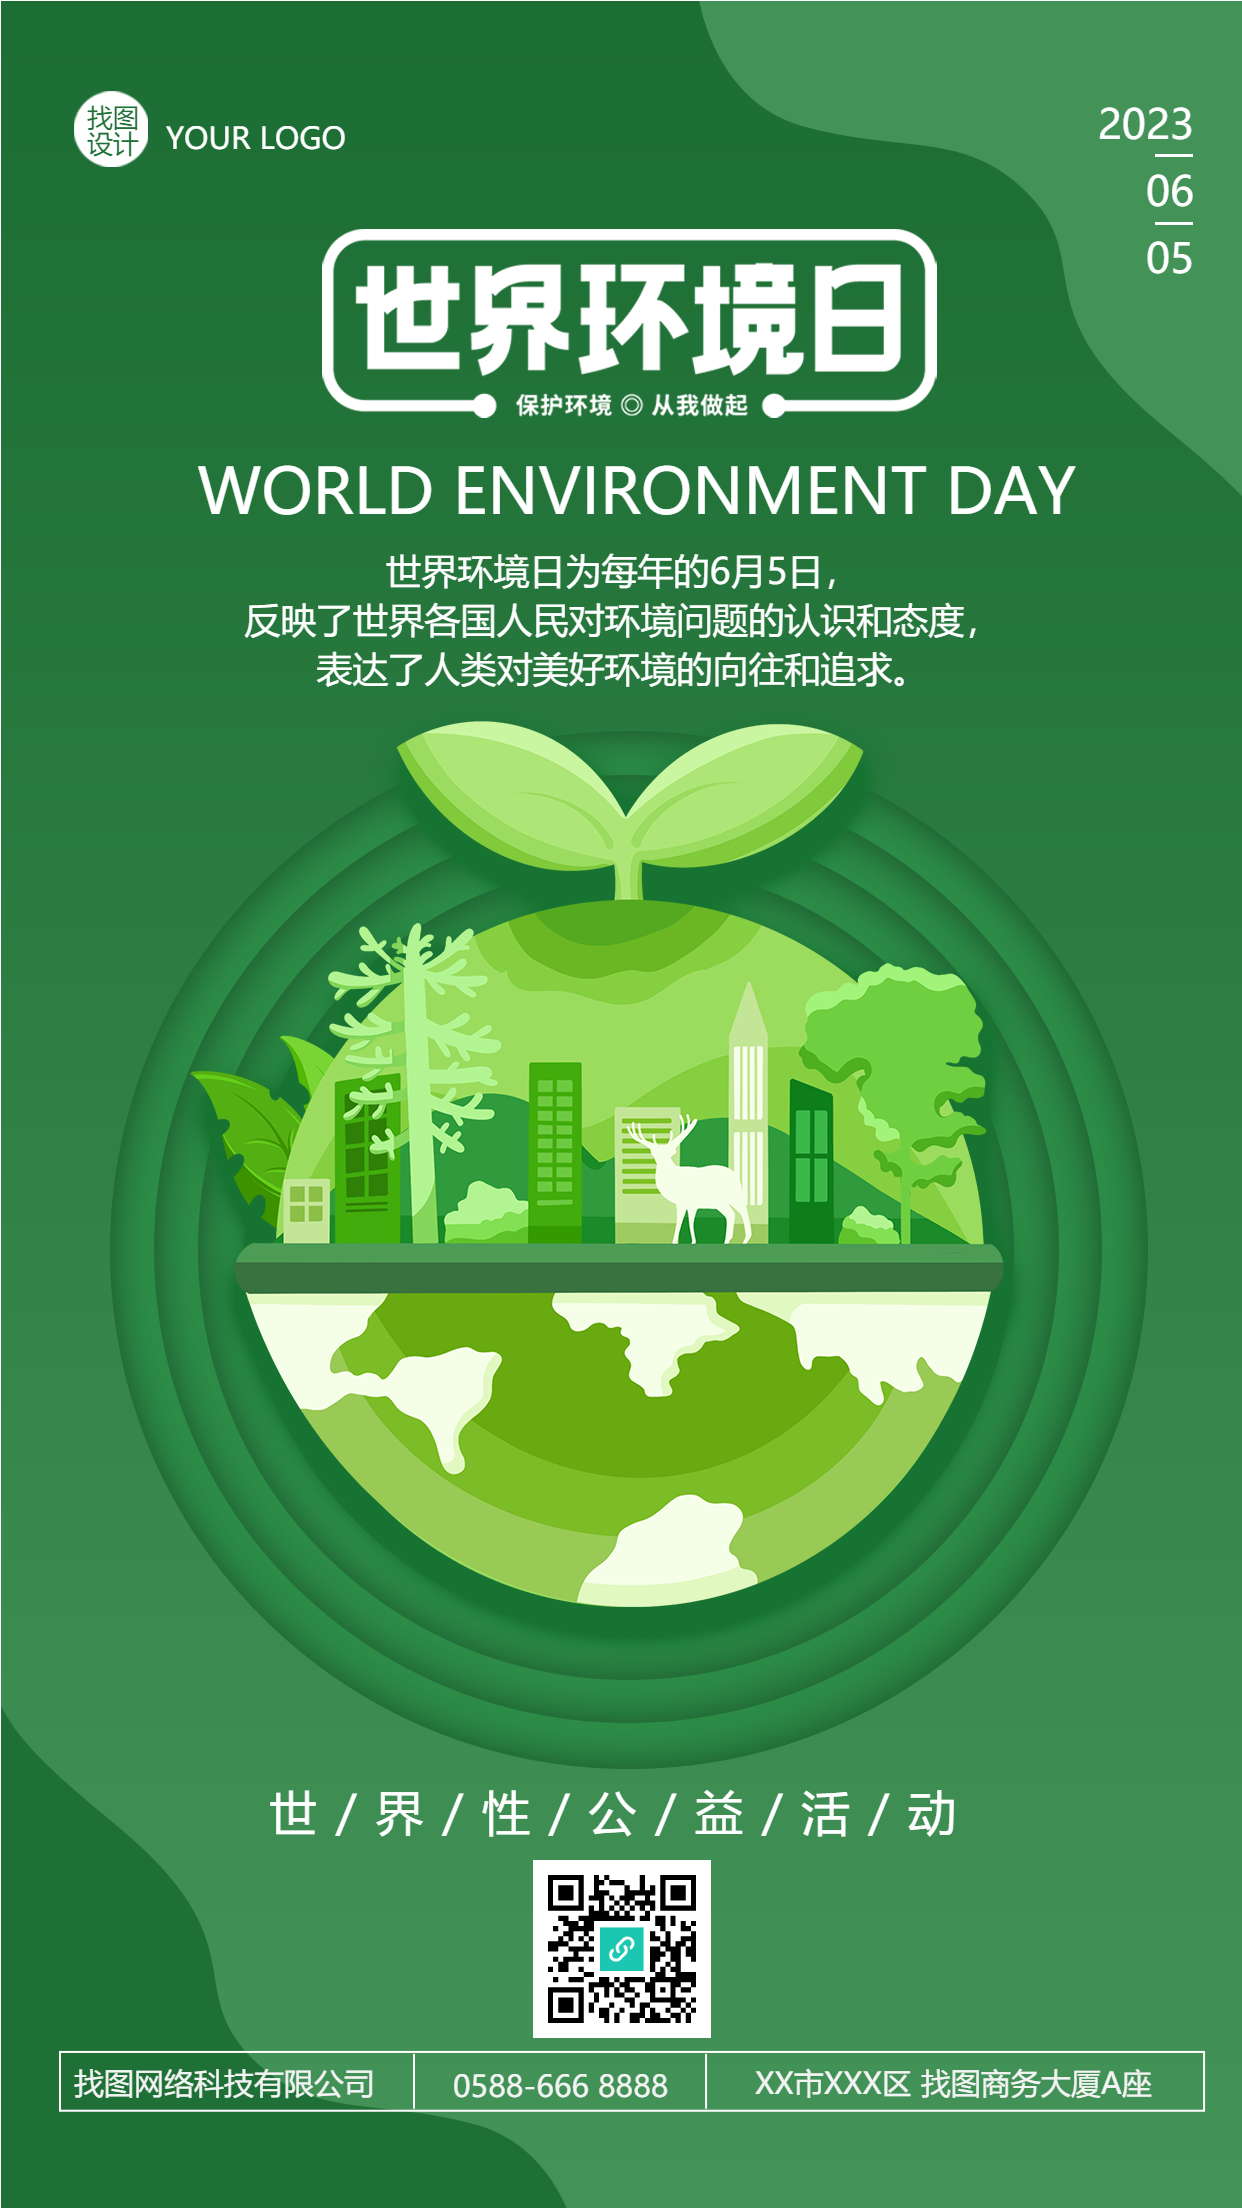 世界性公益活动环境日宣传手机海报